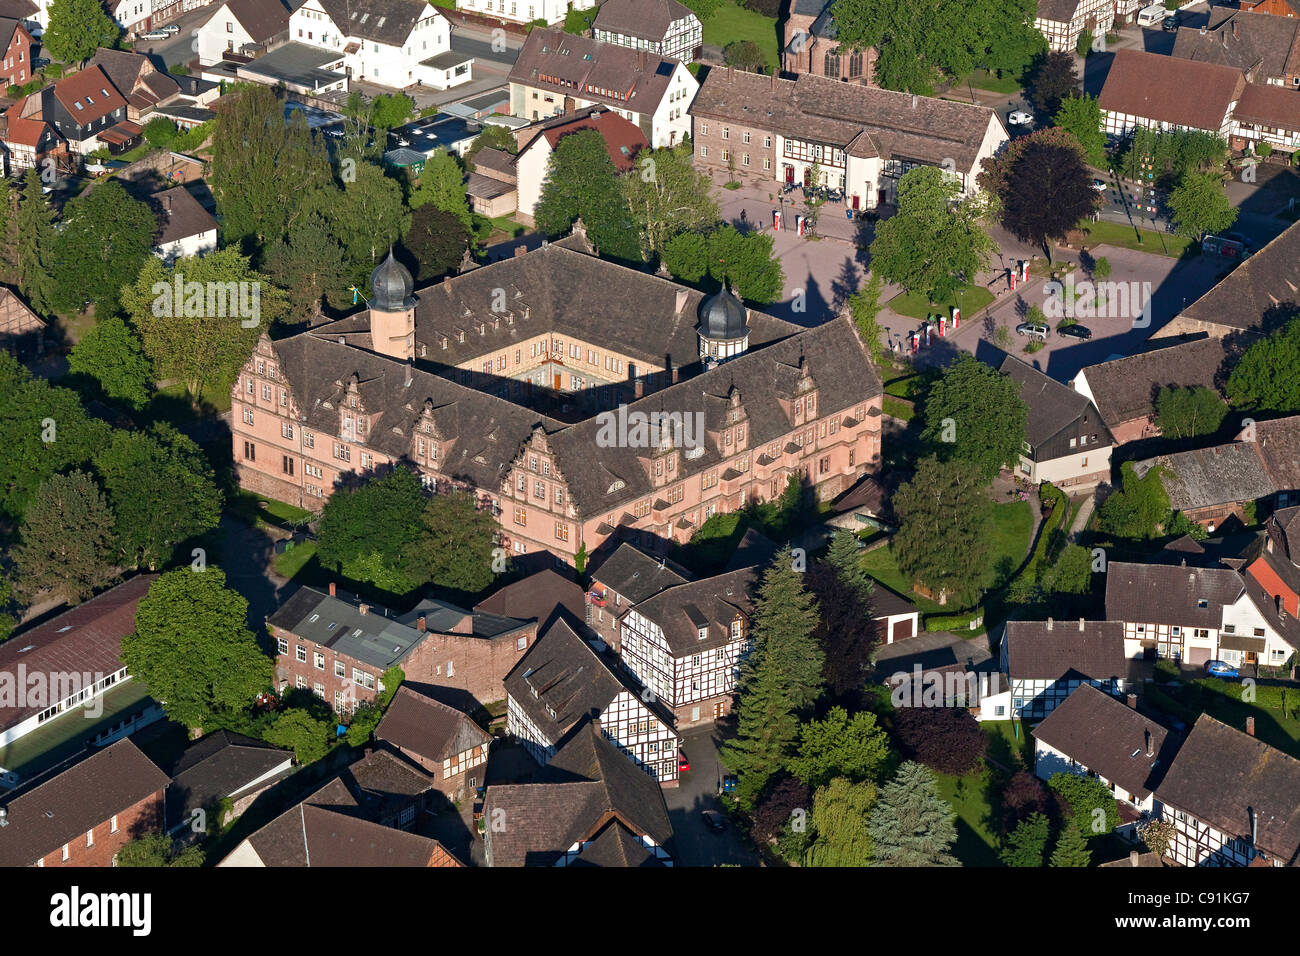 Vue aérienne de château Barth, maisons à colombages, Basse-Saxe, Allemagne Banque D'Images